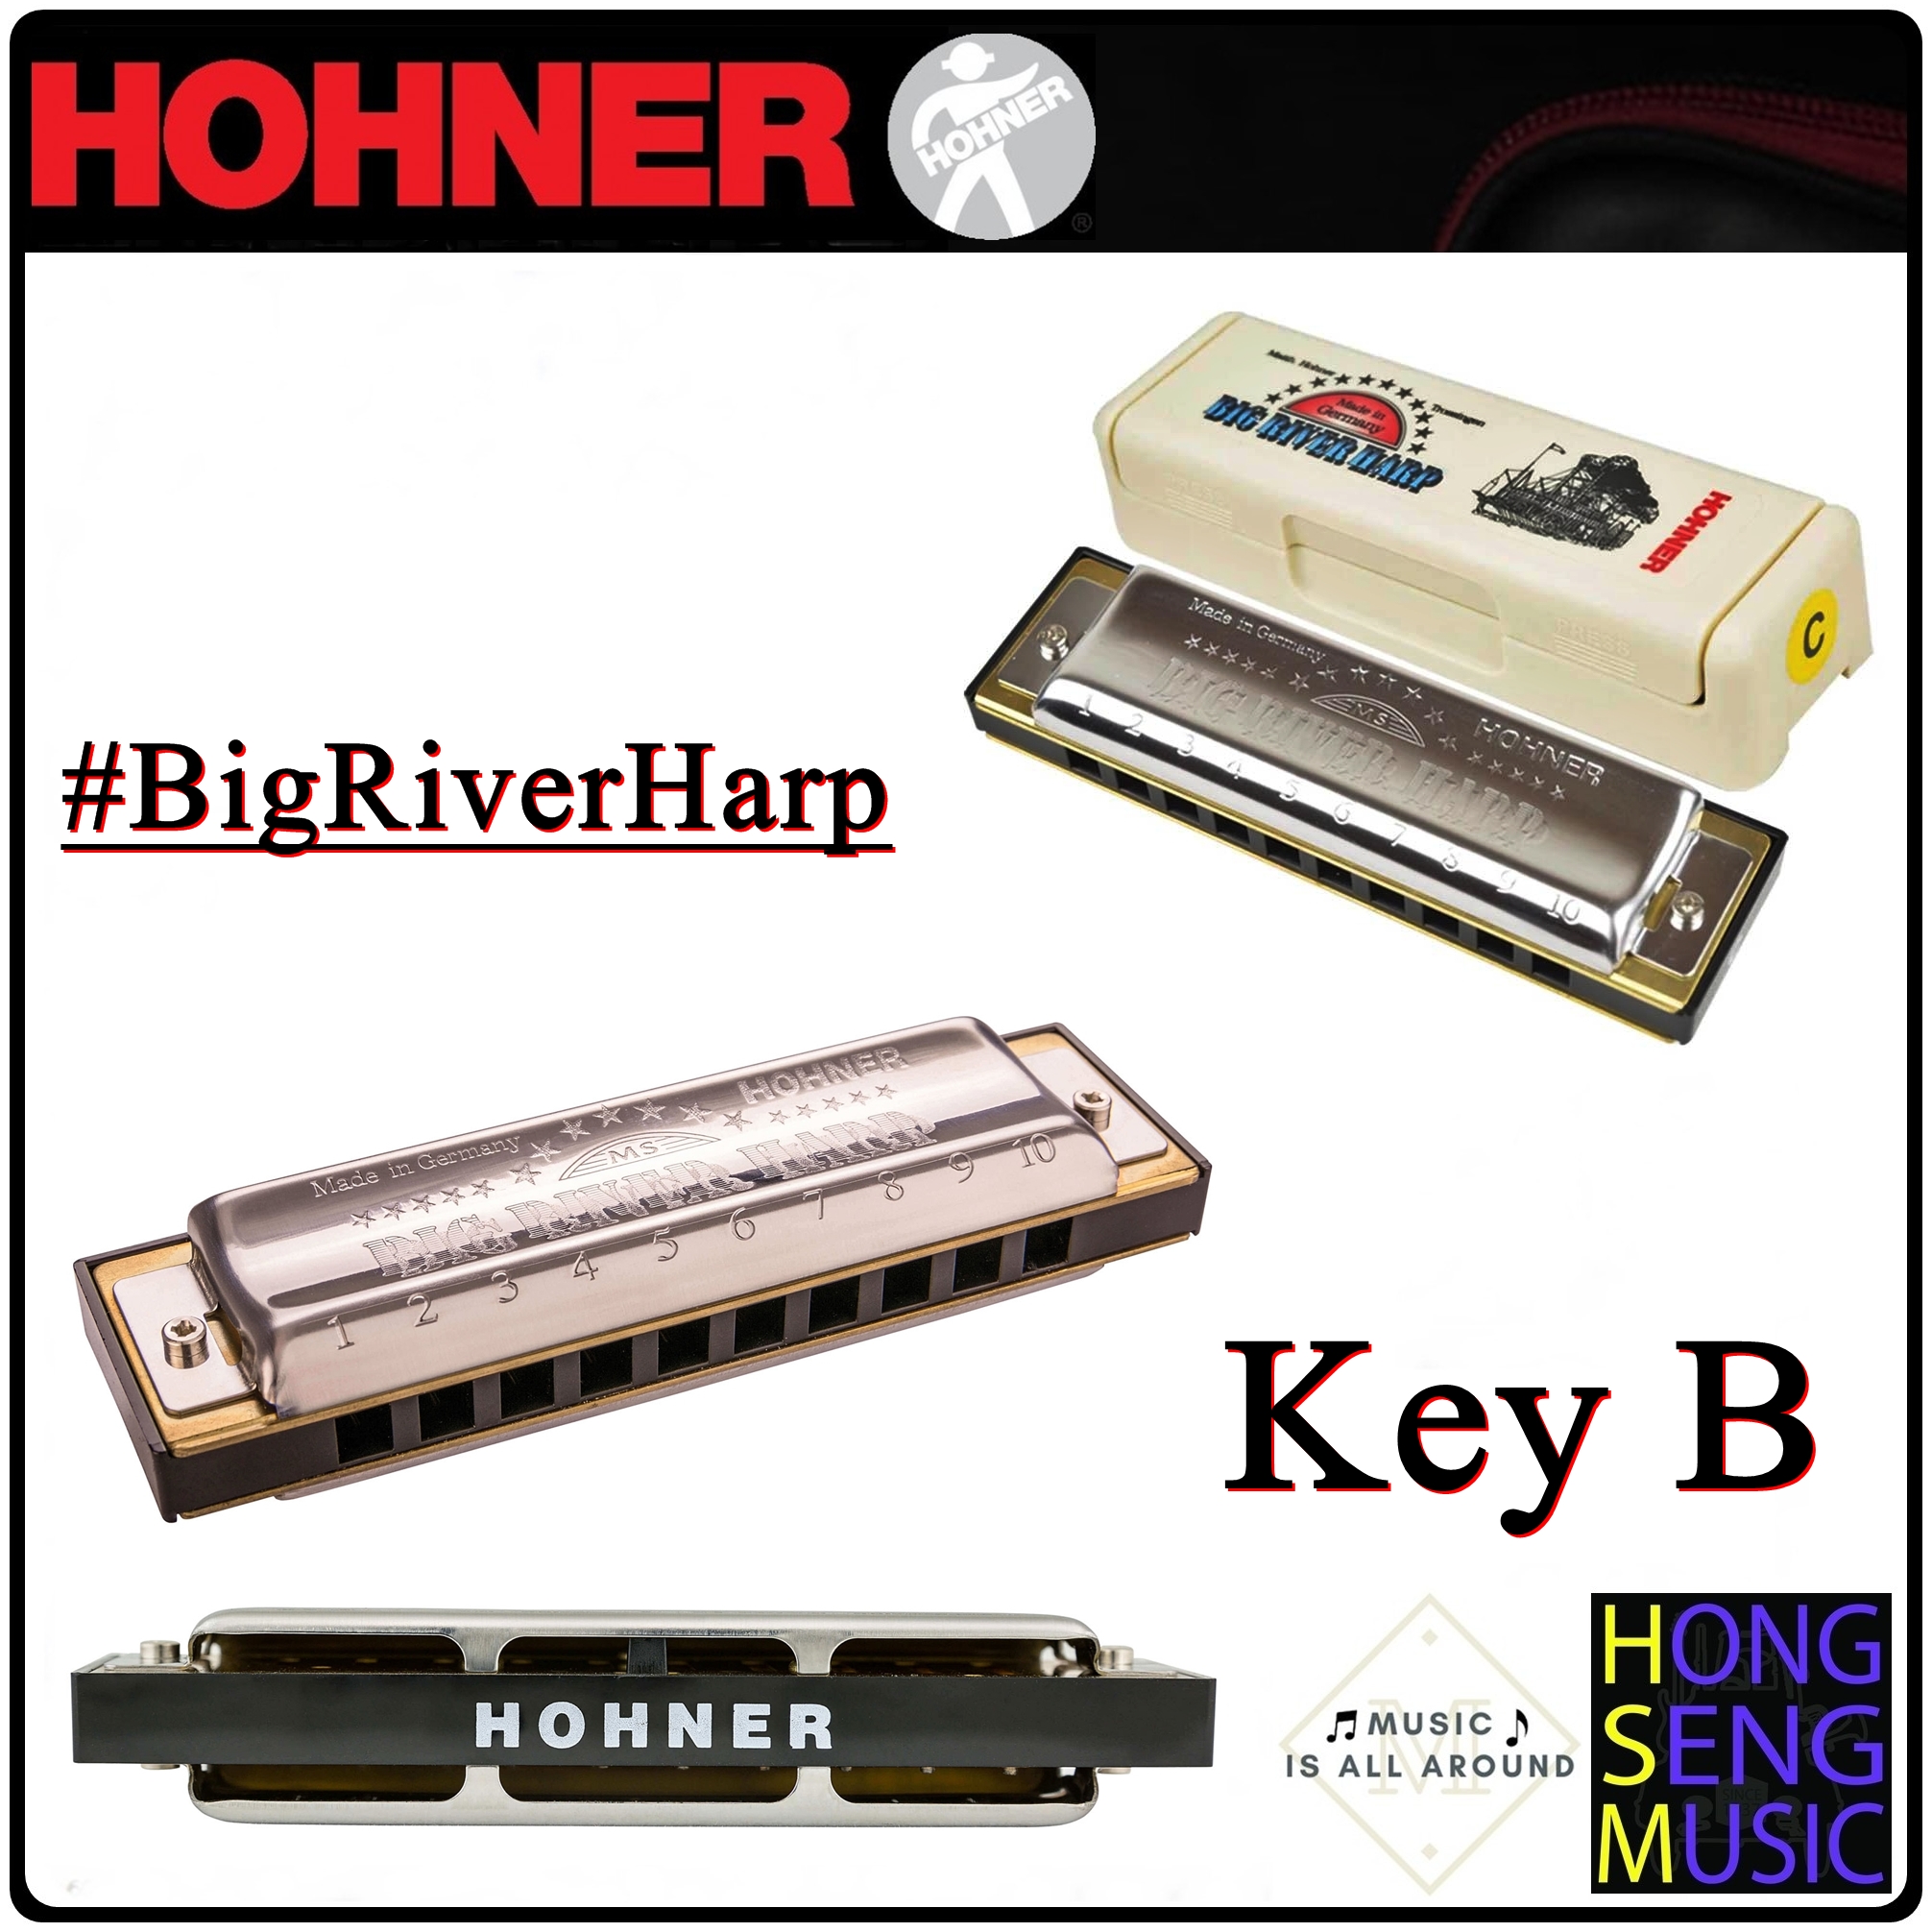 ฮาร์โมนิก้า (เม้าท์ออร์แกน) Hohner รุ่น Big River Harp Harmonica 590 Key B